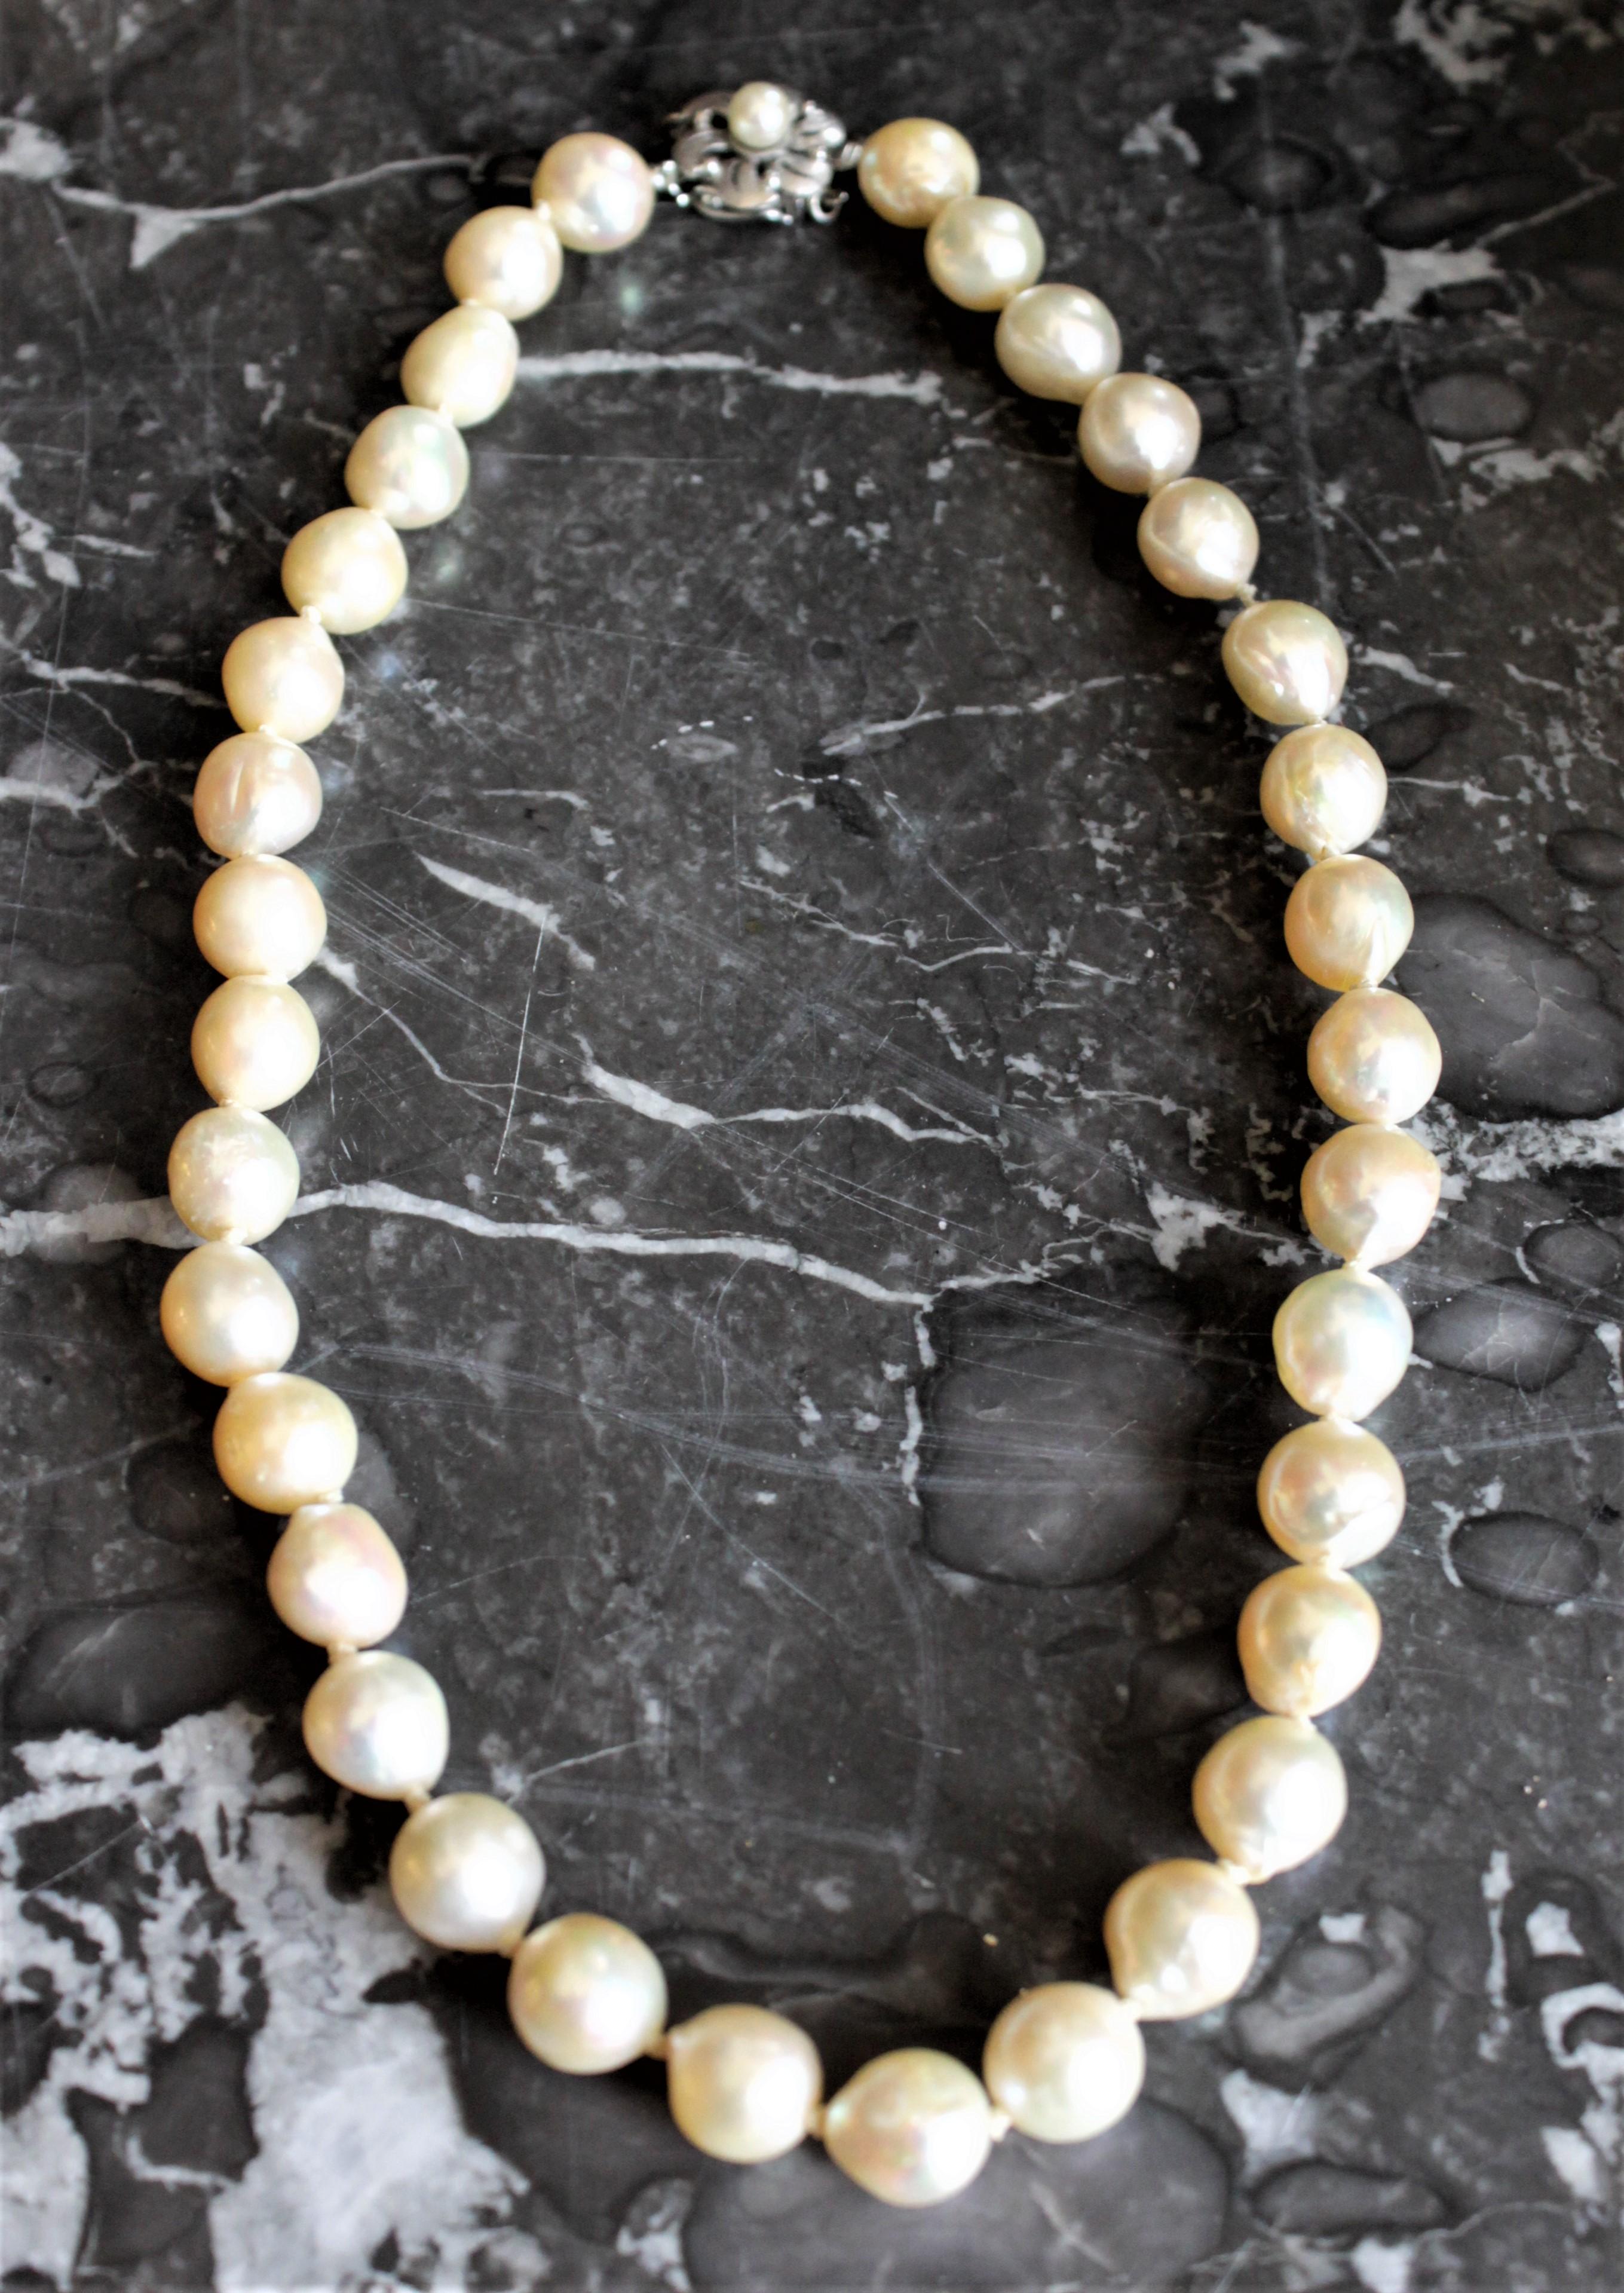 Diese Vintage-Damen-Zuchtperlenkette ist vermutlich um 1950 in Nordamerika im Barockstil hergestellt worden. Die Perlen haben eine gute Größe und sind gut aufeinander abgestimmt, mit einem starken irisierenden Glanz. Die Perlen sind einzeln von Hand